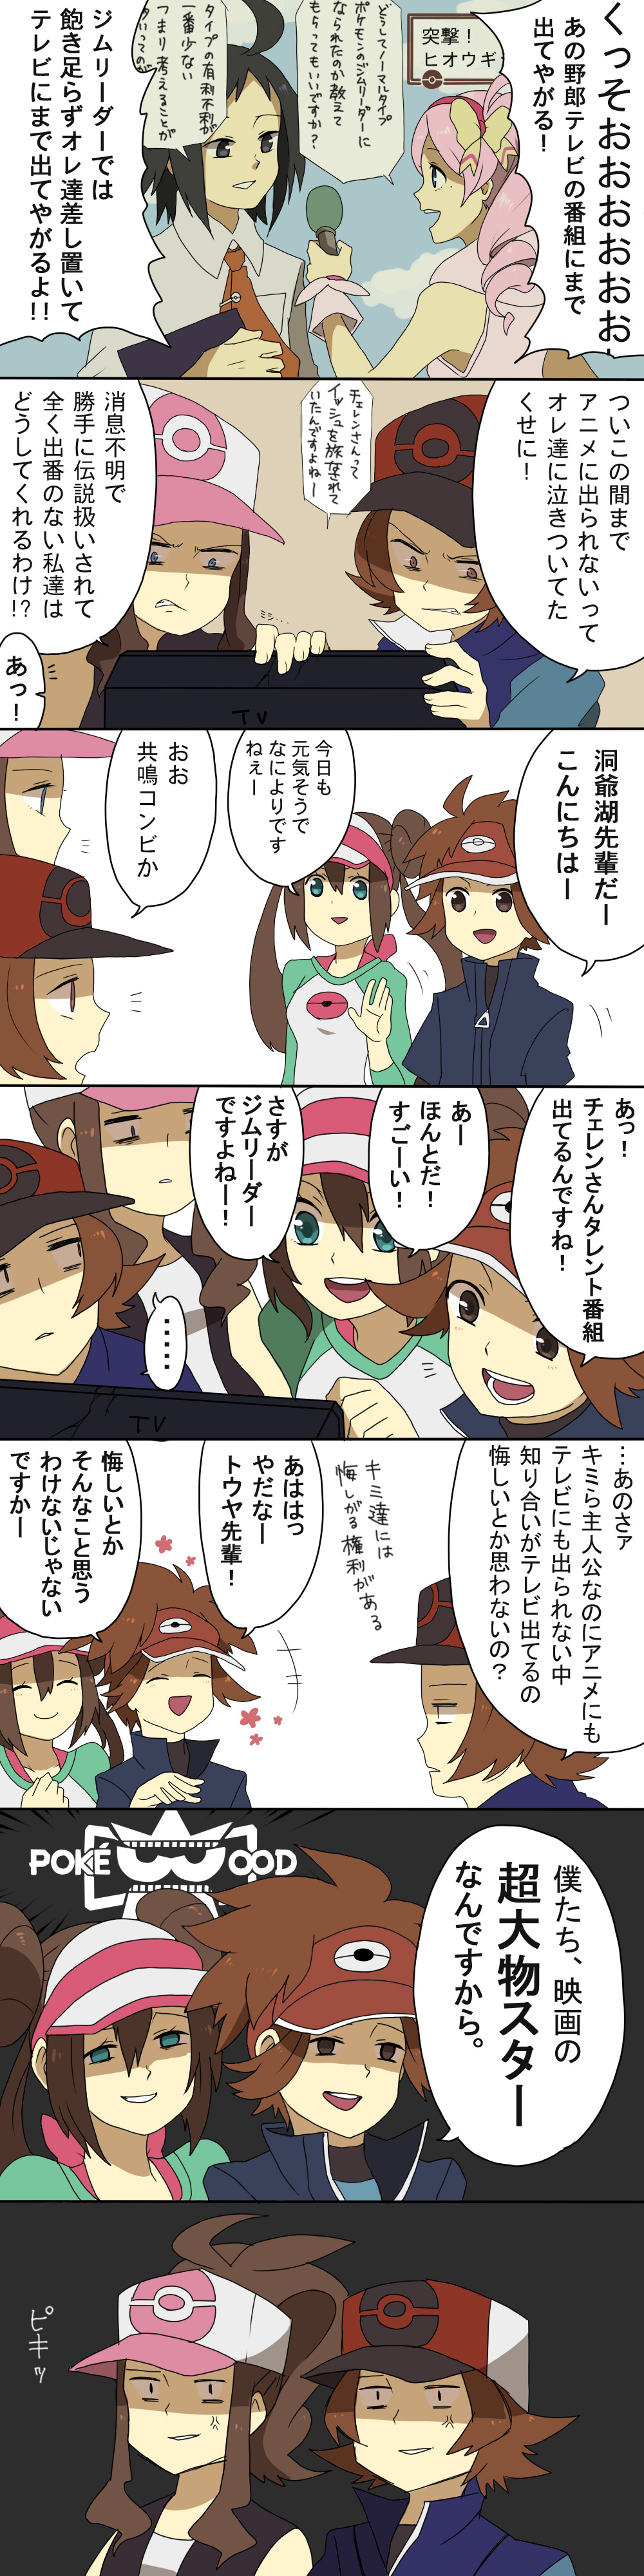 absurdres anger_vein baseball_cap cheren_(pokemon) comic double_bun hat highres kyouhei_(pokemon) mei_(pokemon) pokemon pokemon_(game) pokemon_bw2 ponytail sei_(shinkai_parallel) touko_(pokemon) touya_(pokemon) translation_request twintails